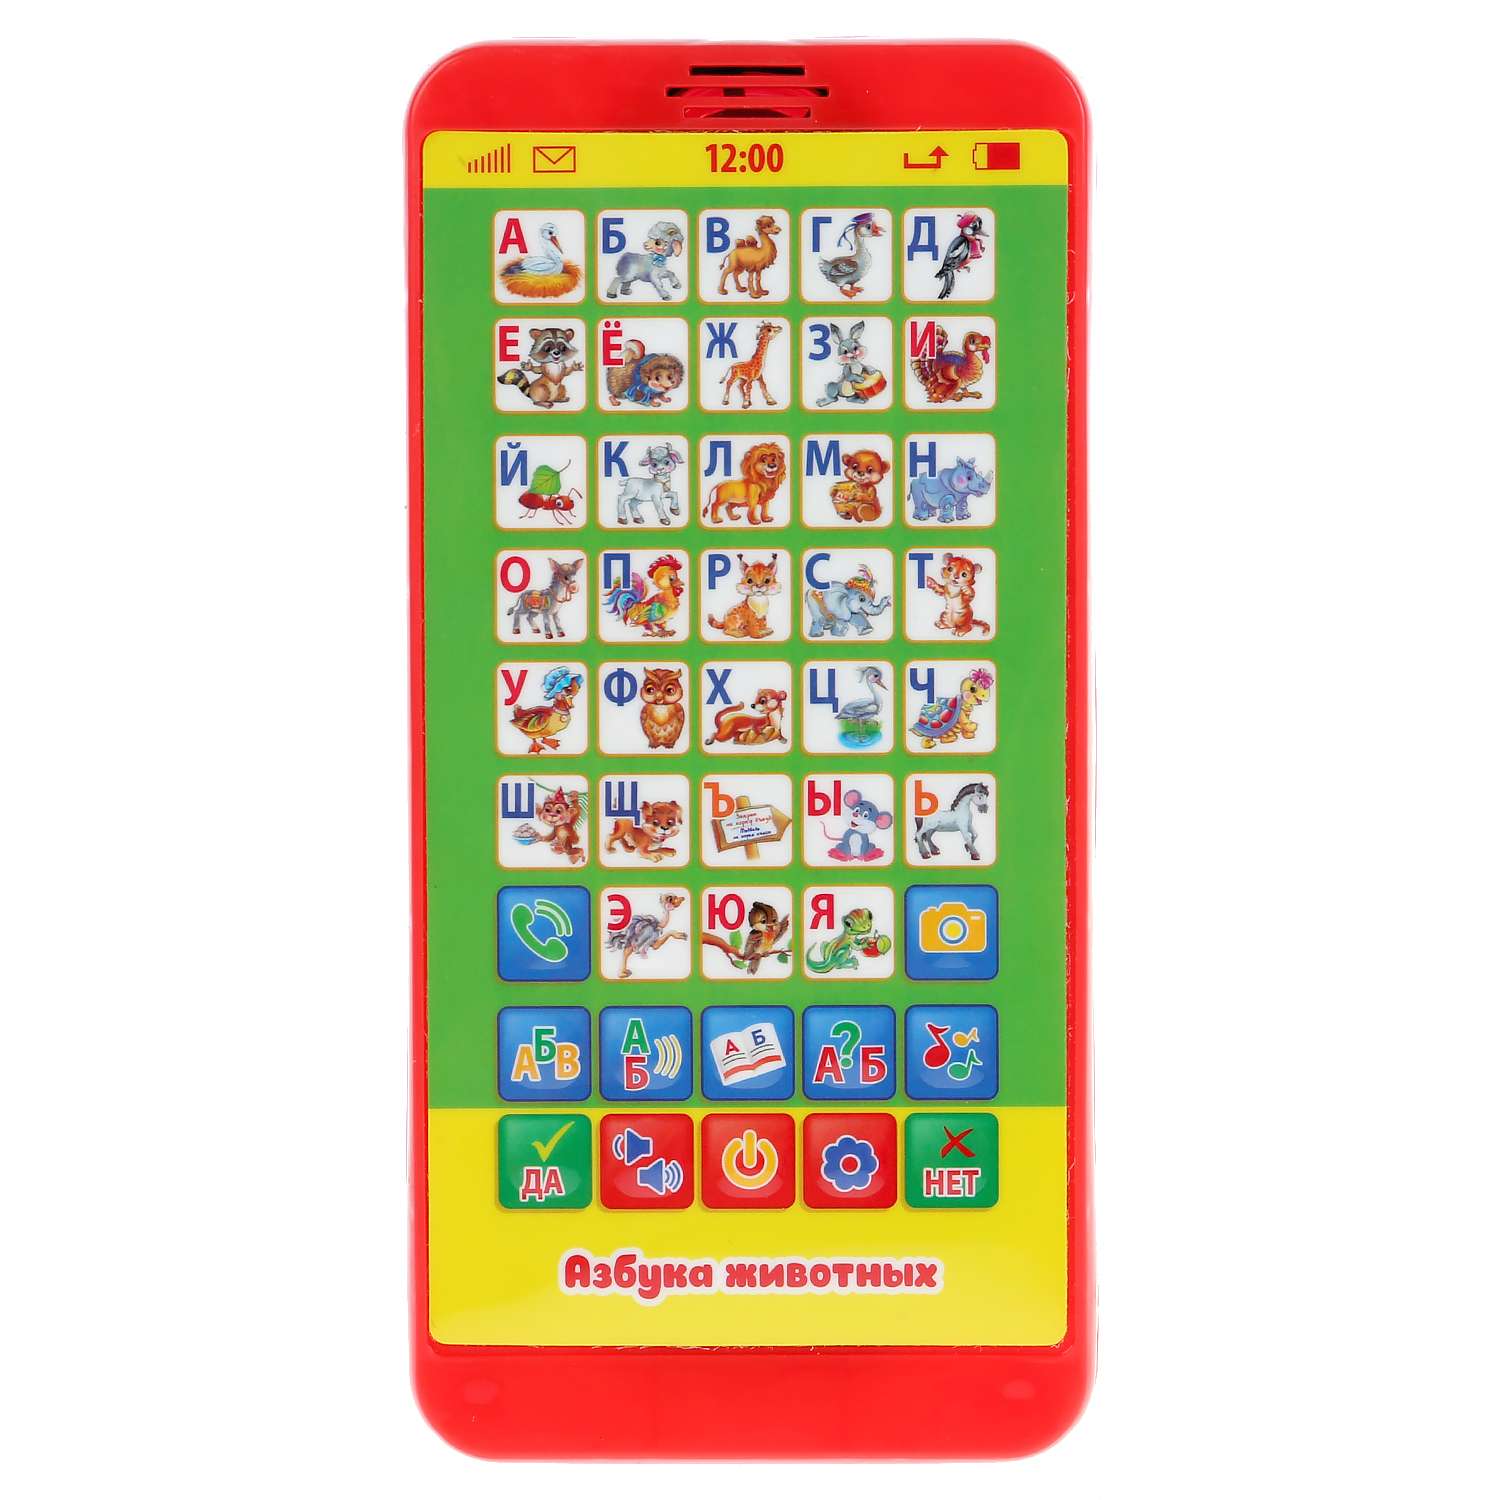 Телефон Умка Дружинина азбука животных 50+ загадок и игр 6 режимов обучения 5 песен 296362 - фото 3